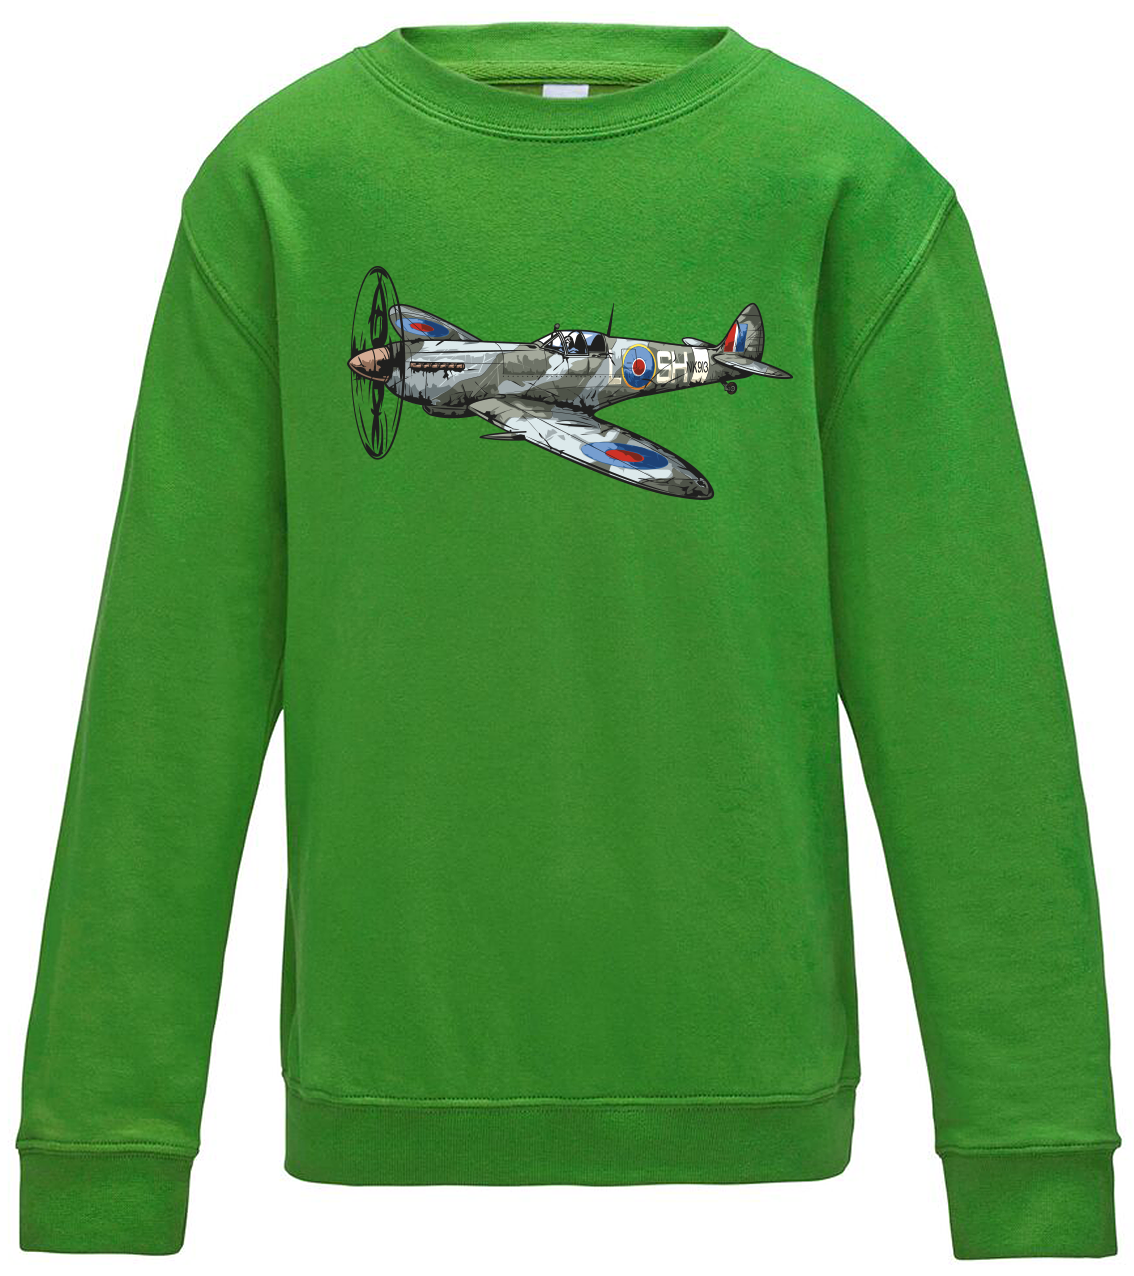 Dětská mikina s letadlem - Spitfire Velikost: 12/14 (152/164), Barva: Zelená